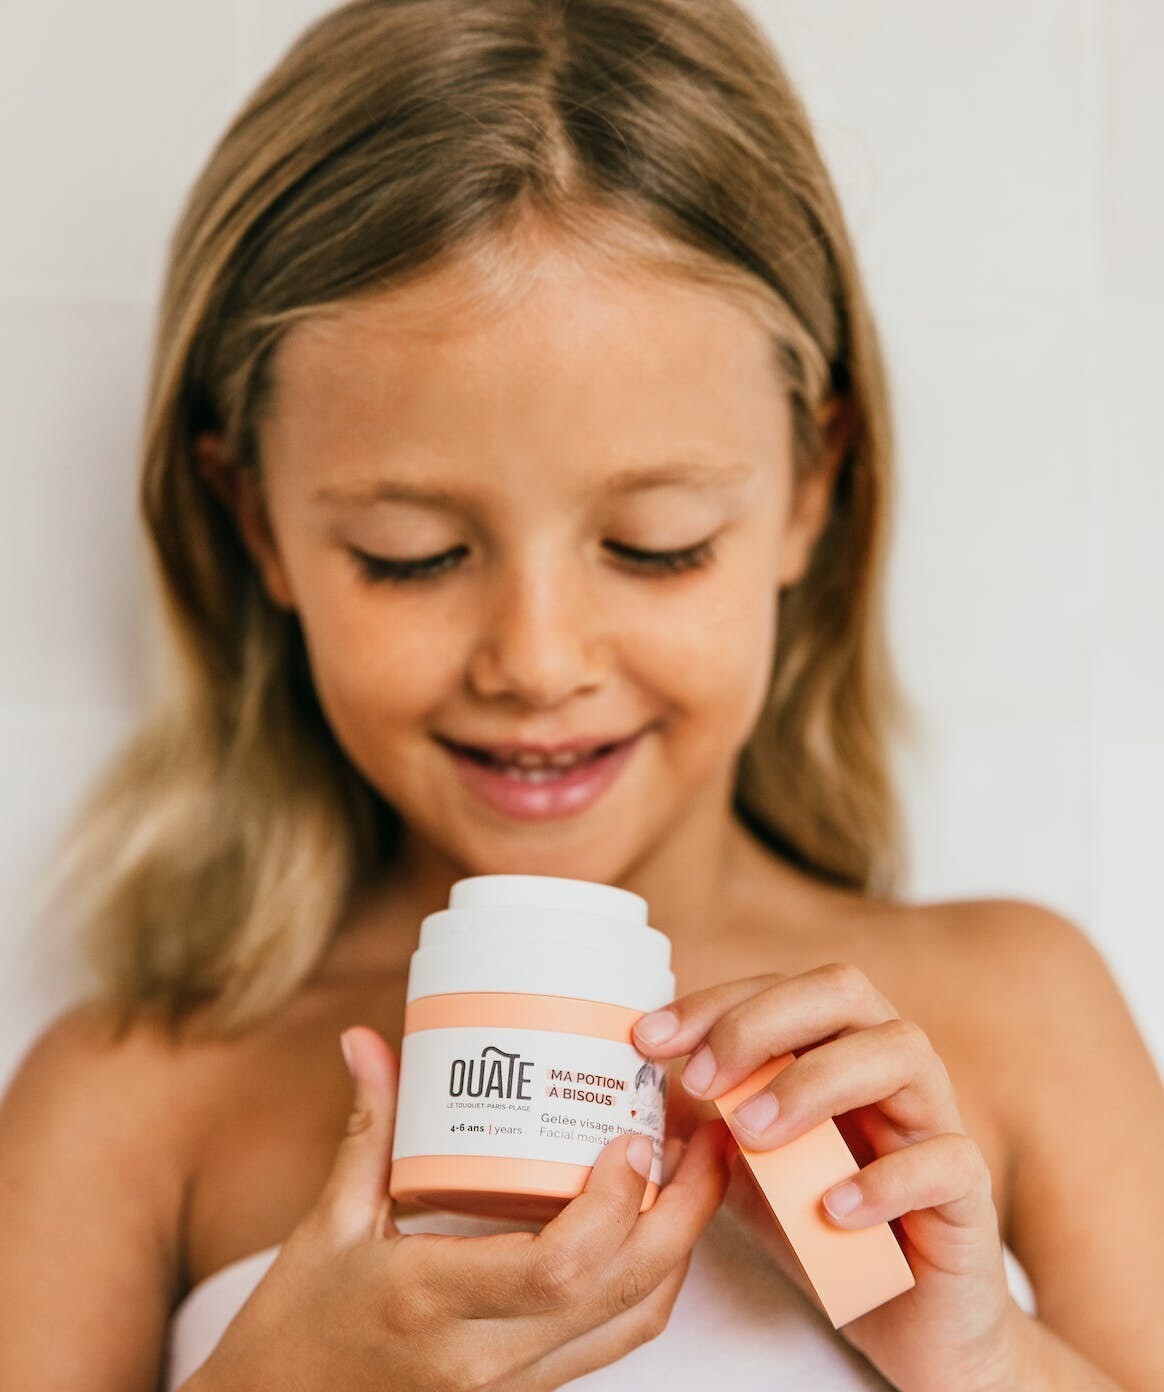 OUATE face cream for kids - Ma Potion à Bisous - Gel crème hydratant enfant 4-6 ans